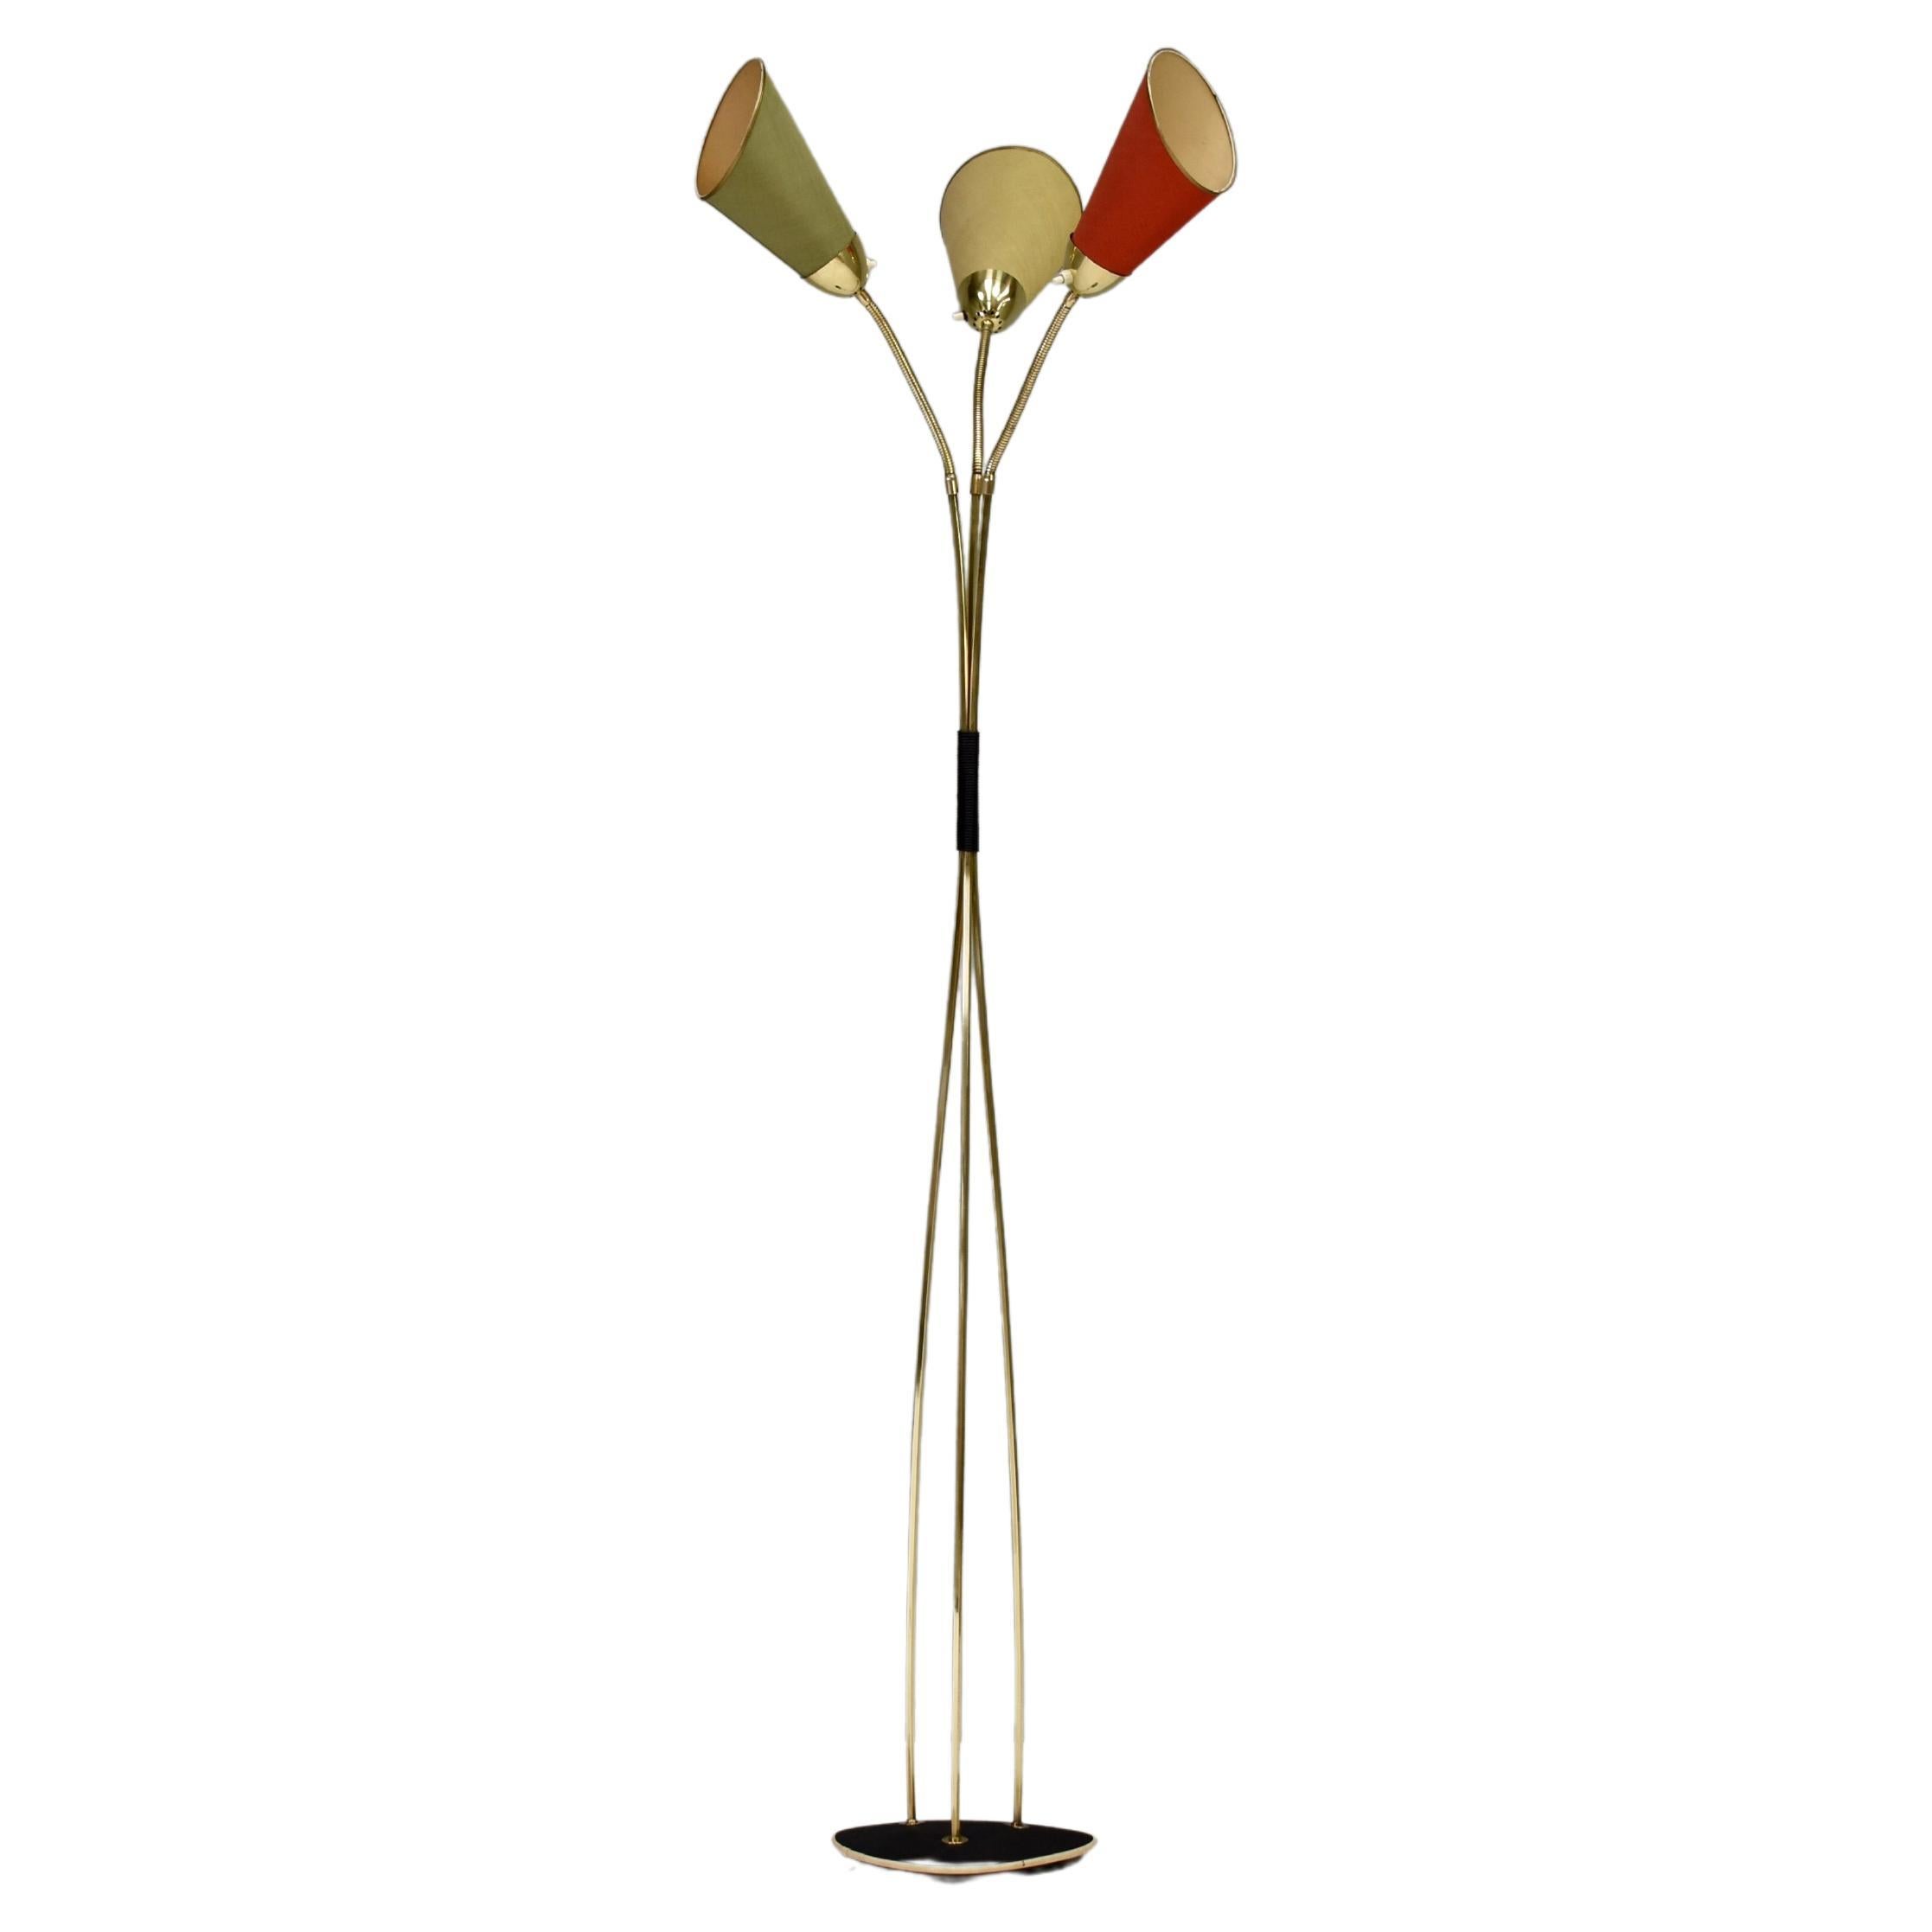 Elegant lampadaire italien des années 1950 en laiton et trois abat-jours en tissu aux couleurs pastel. Les ombres peuvent être pliées de toutes les façons. L'héritage ne peut être déterminé avec exactitude, mais la qualité de l'artisanat, le design